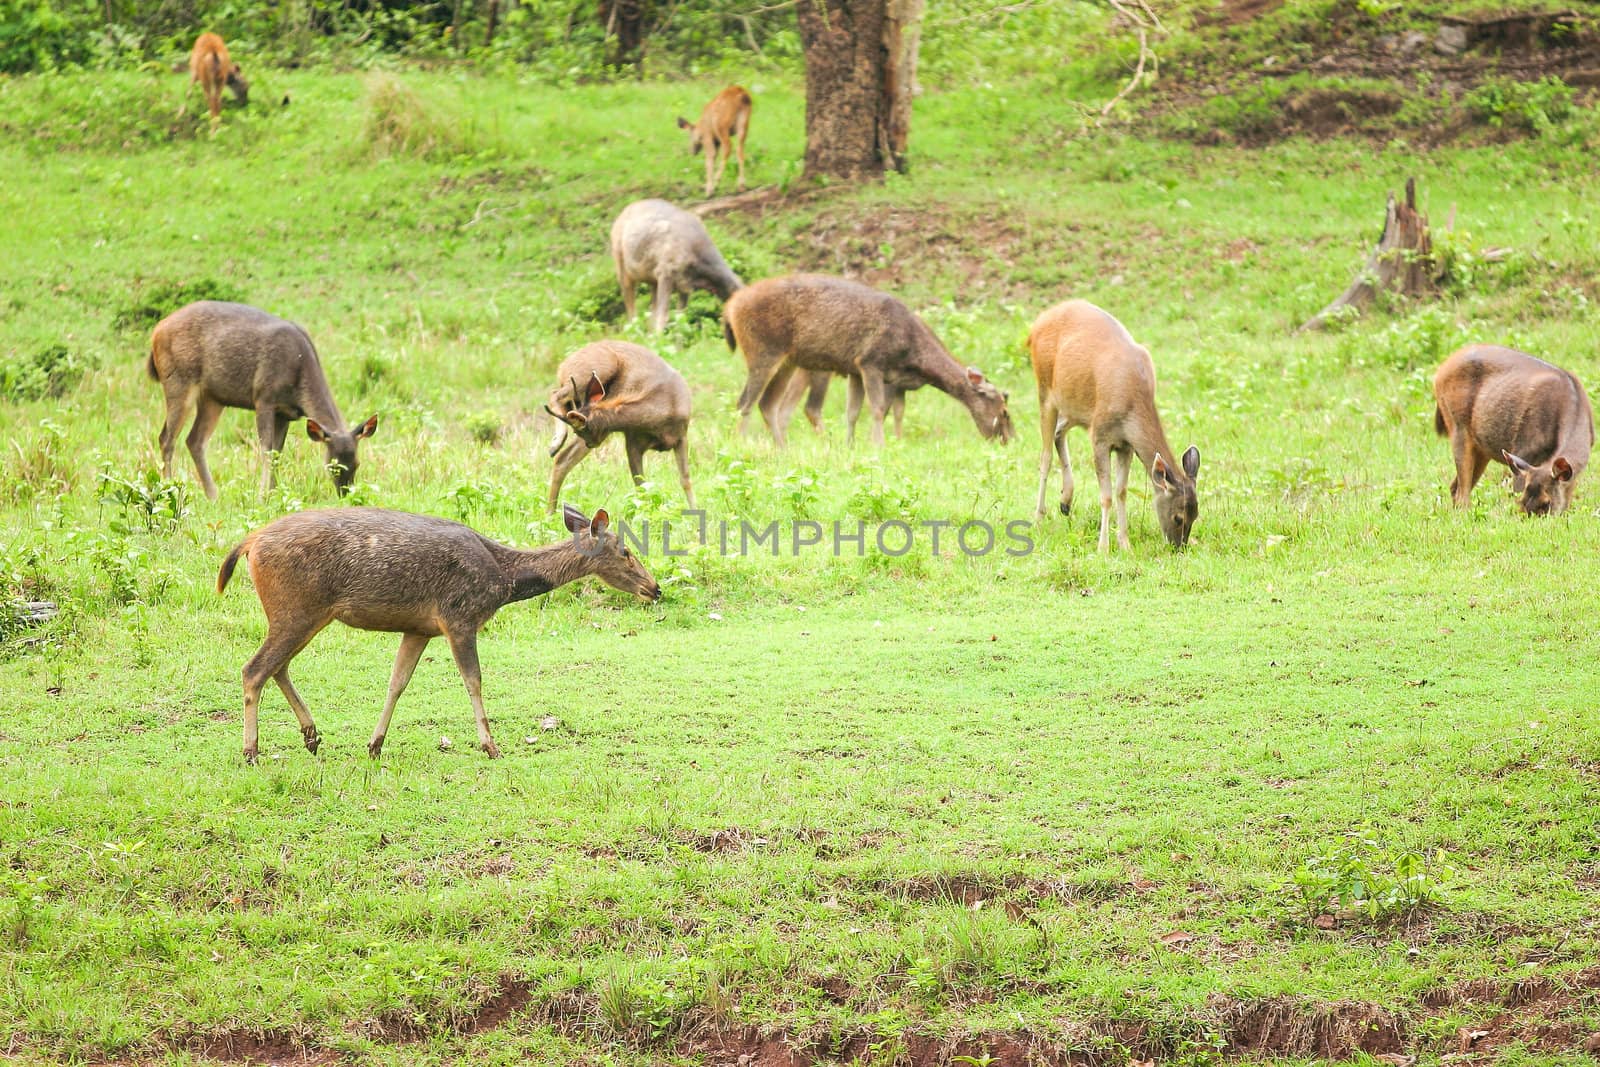 Deer herd in meadow scene at forest, Thailand.